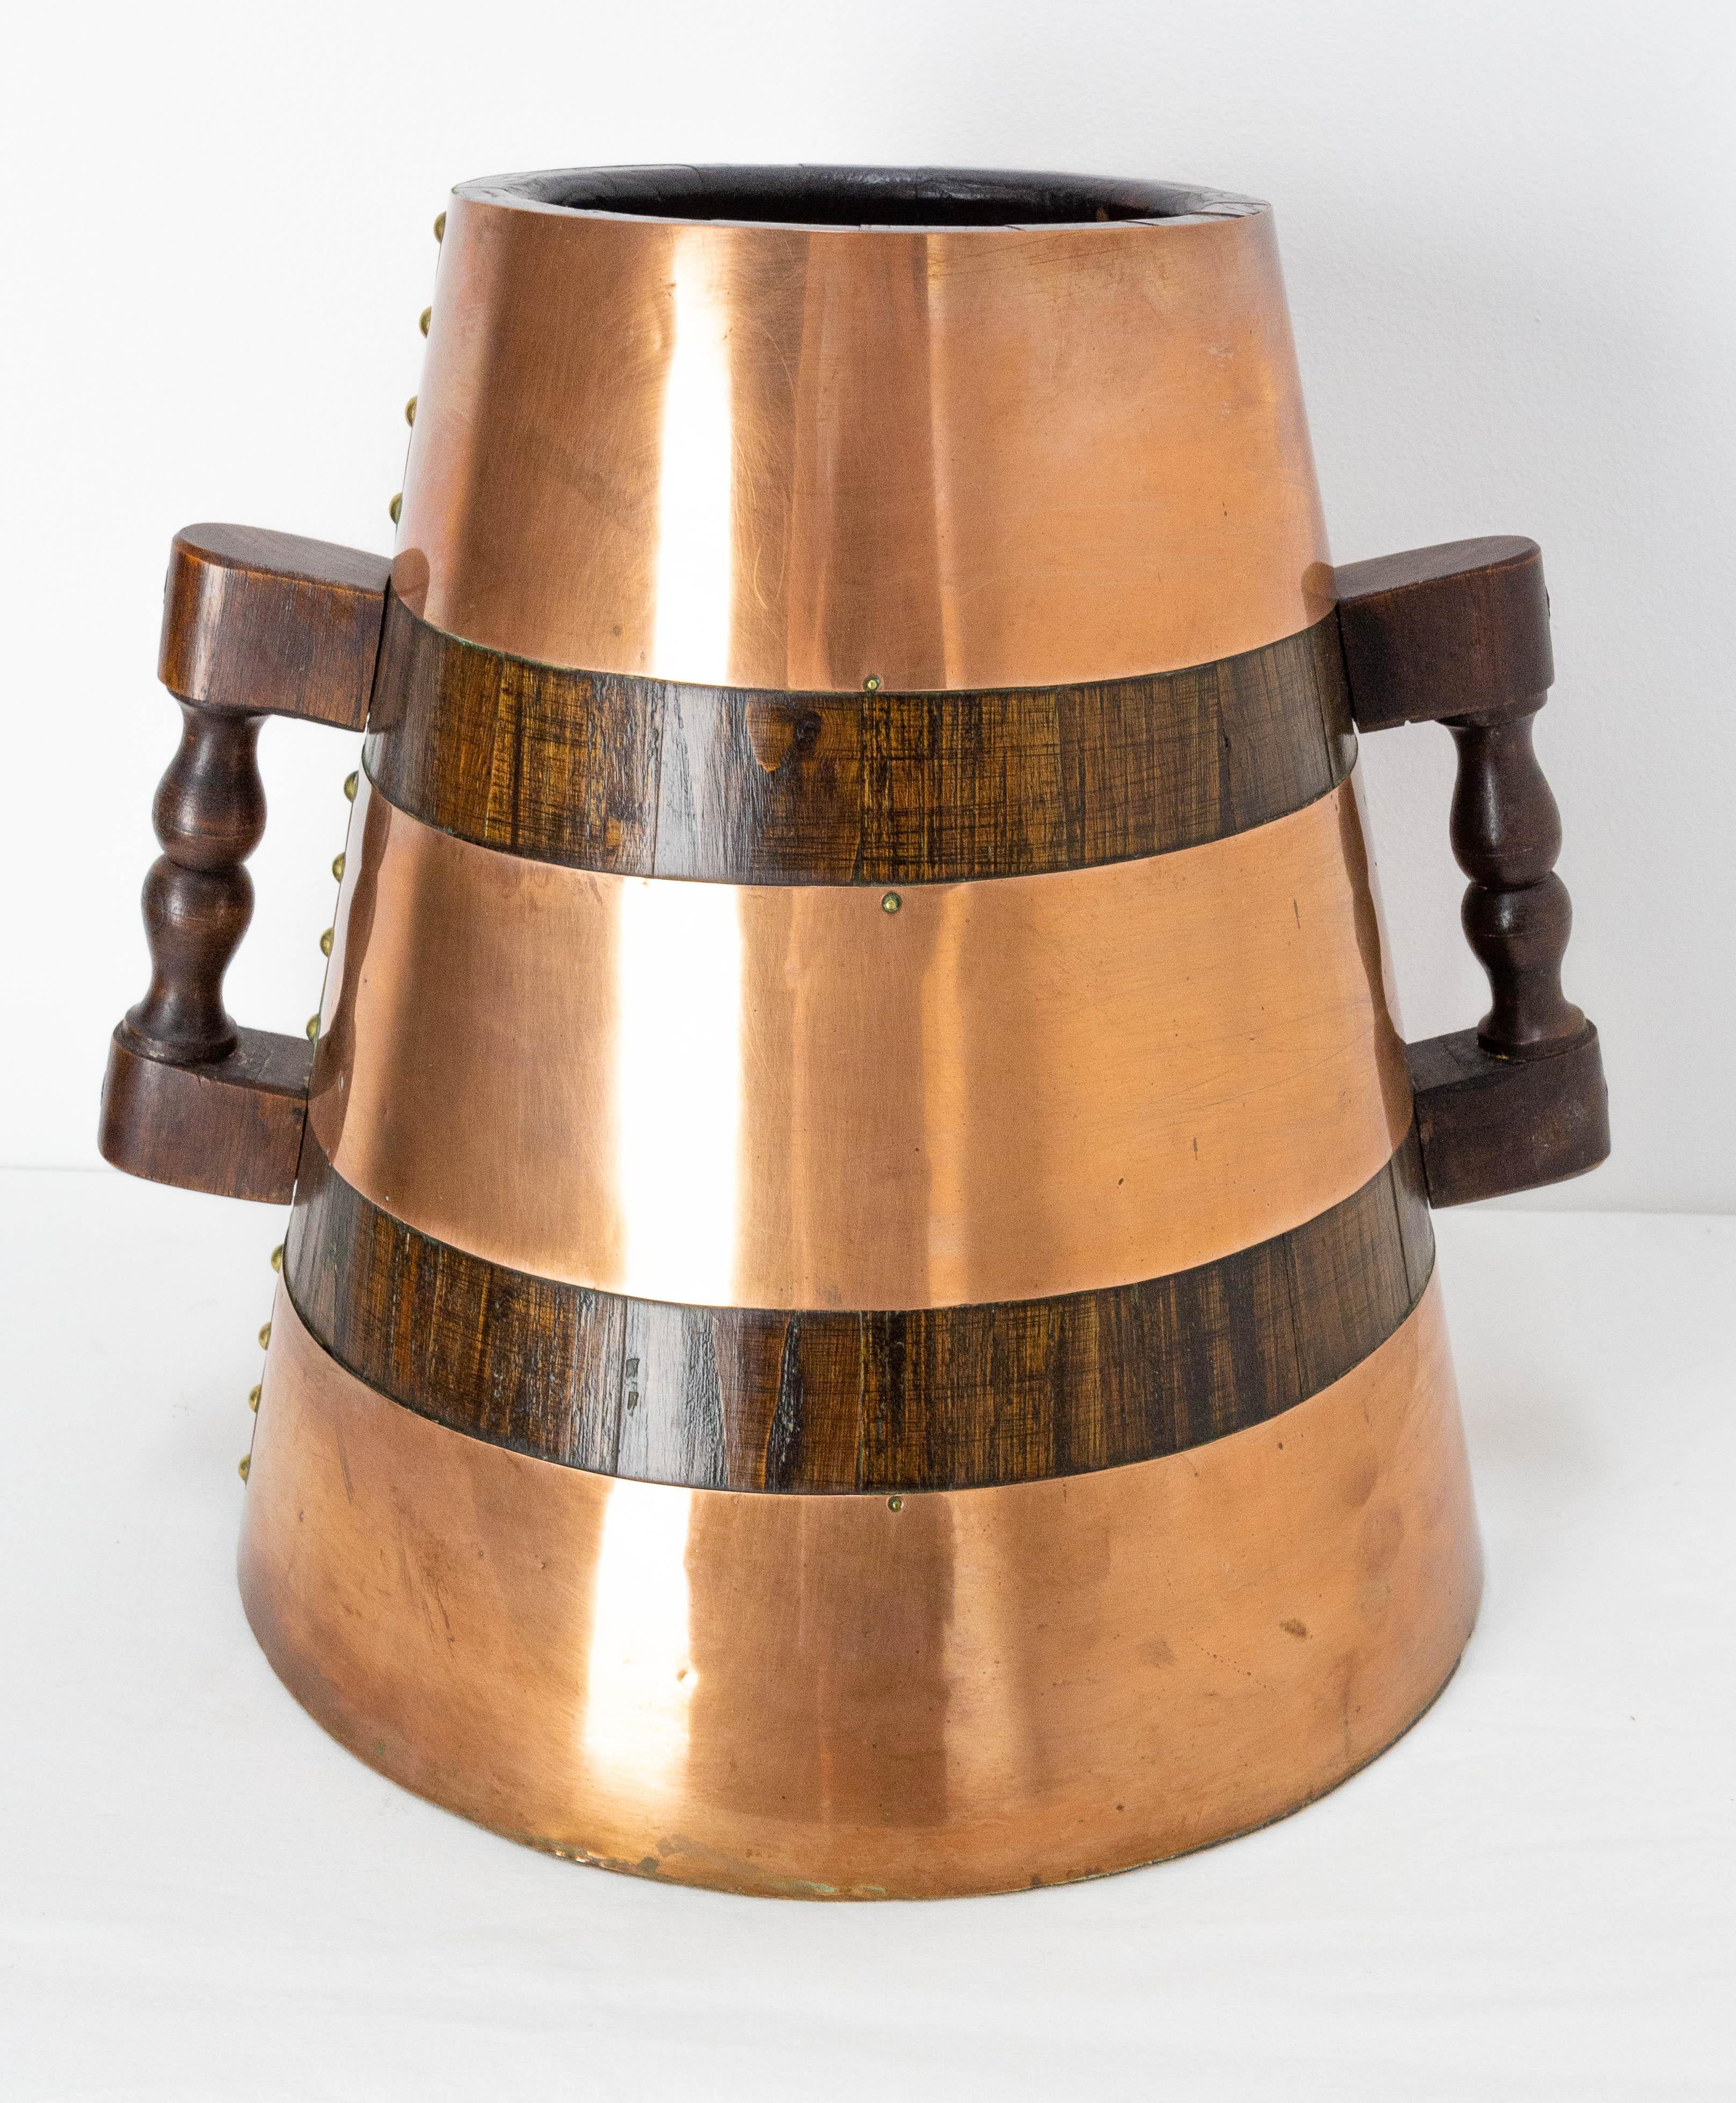 Porte-eau basque en chêne et cuivre très décoratif
Herrade Espagne 1960
Au Pays basque, les femmes utilisaient cette jarre pour apporter l'eau de la fontaine publique à leur maison.
Ils tenaient l'herrade sur leur tête avec un anneau en